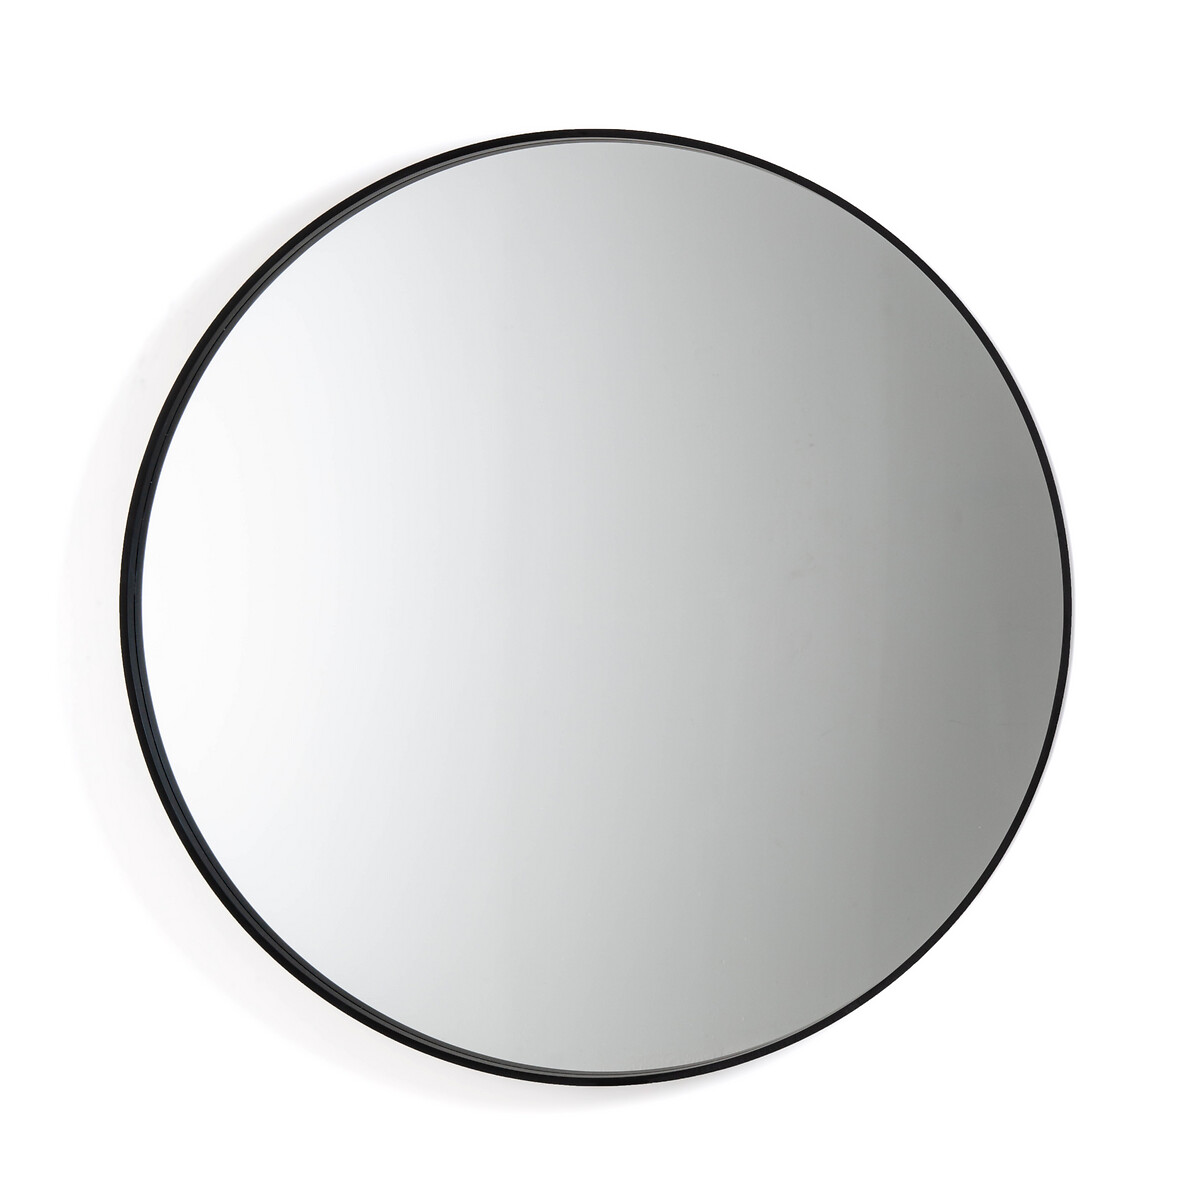 Alaria Round Mirror Diameter 120cm, Extra Large Round White Wall Mirror 120cm X